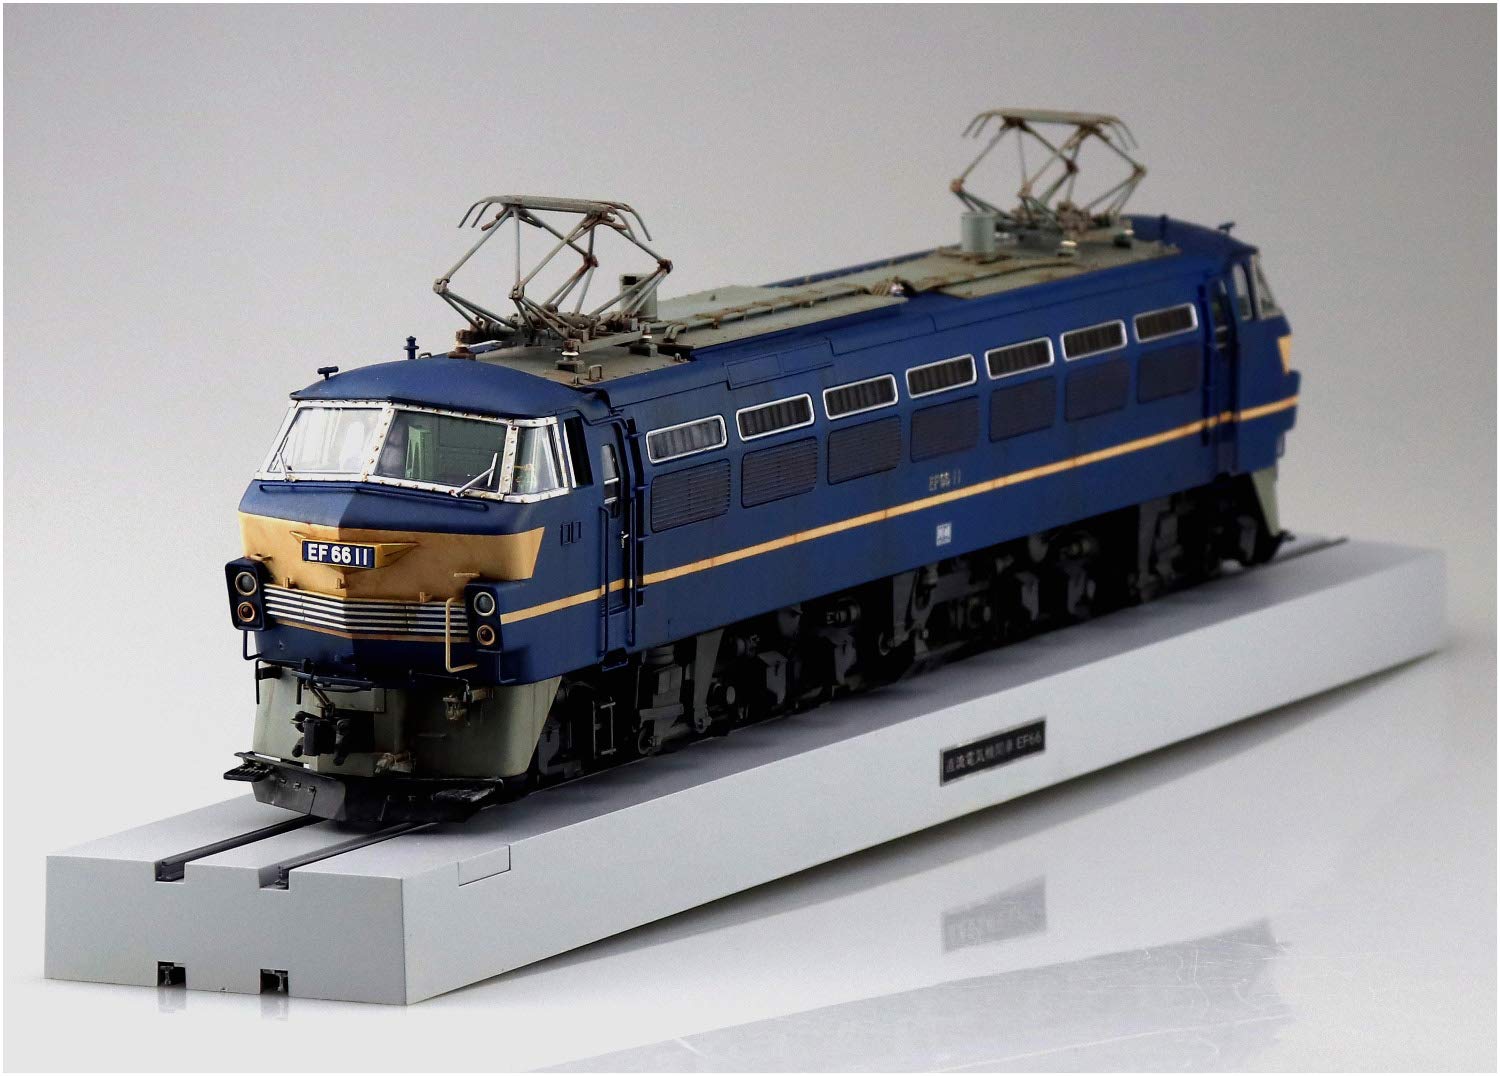 1/45 トレインミュージアムOJ No.5『電気機関車 EF66 前期型』プラモデル-004